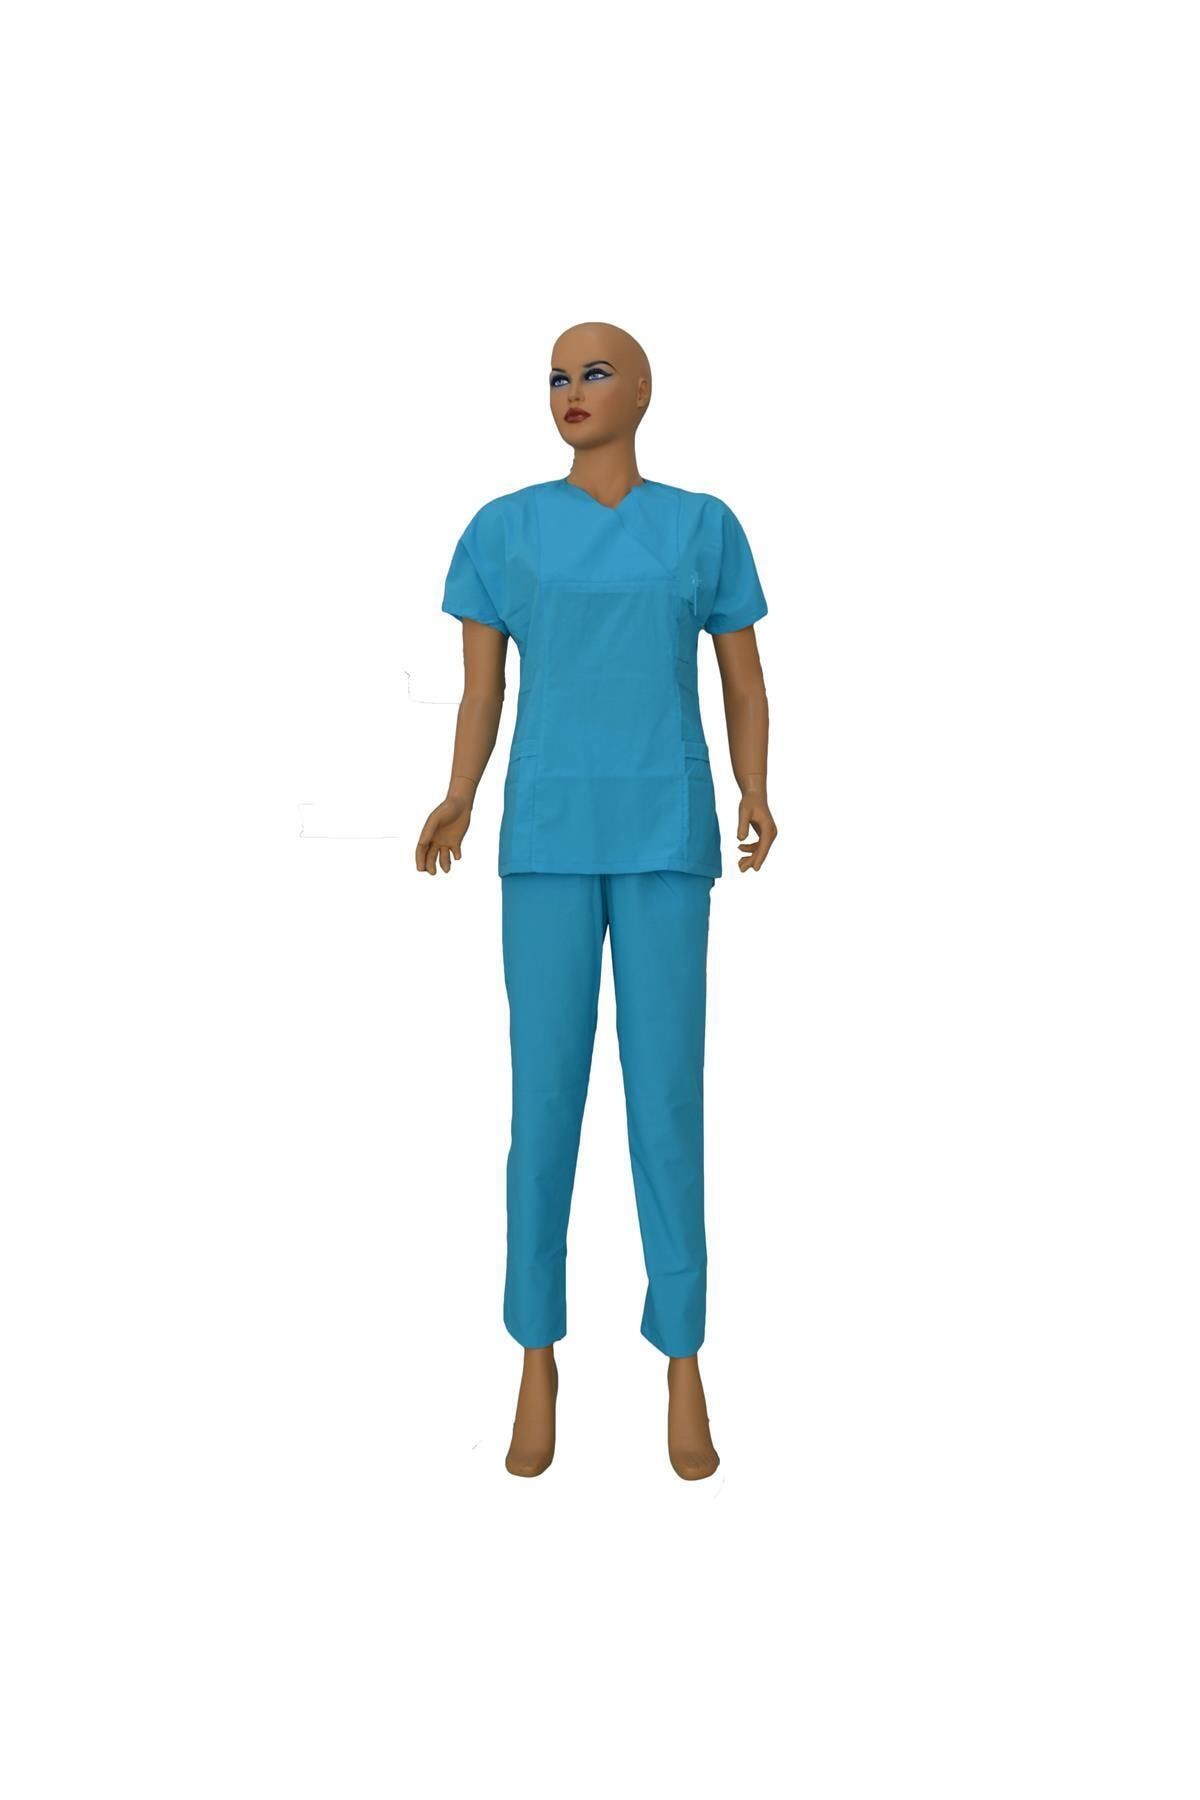 Emel Tekstil Dr. Hemşire Kadın Forma Açık Mavi Yarasa Takım